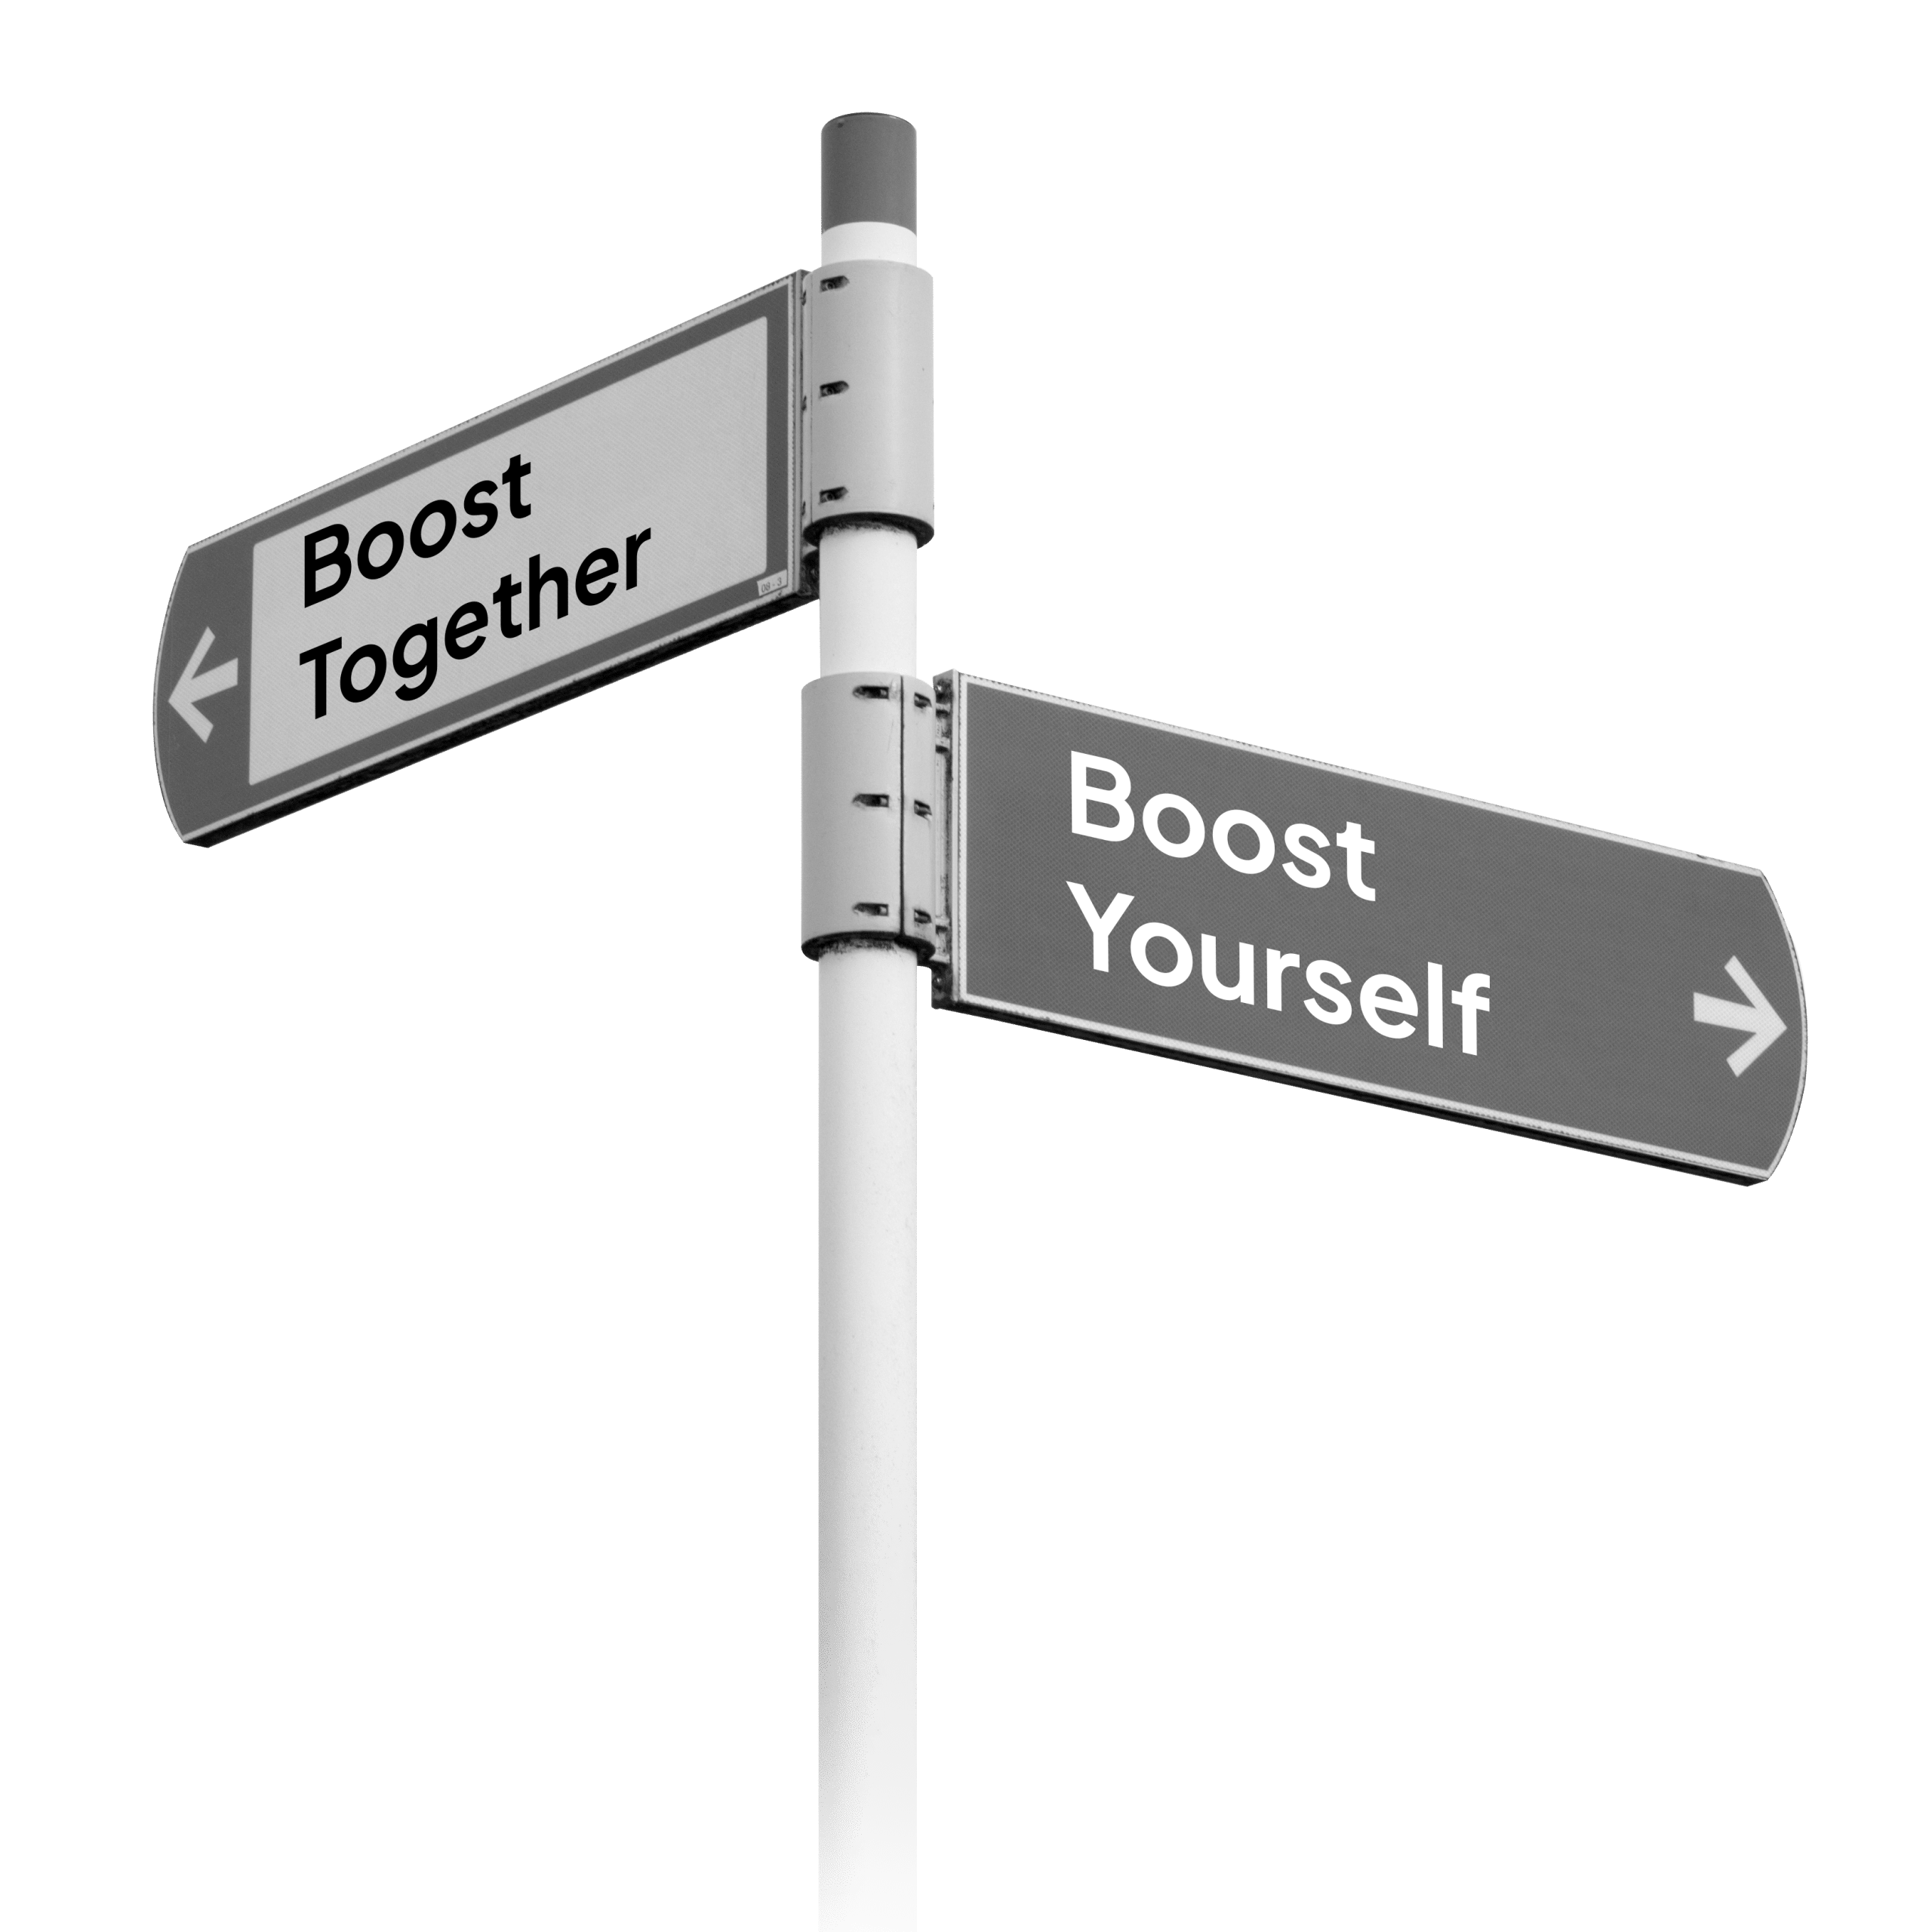 Een foto van een verkeersbord met de richtingen Boost Together en Boost Yourself